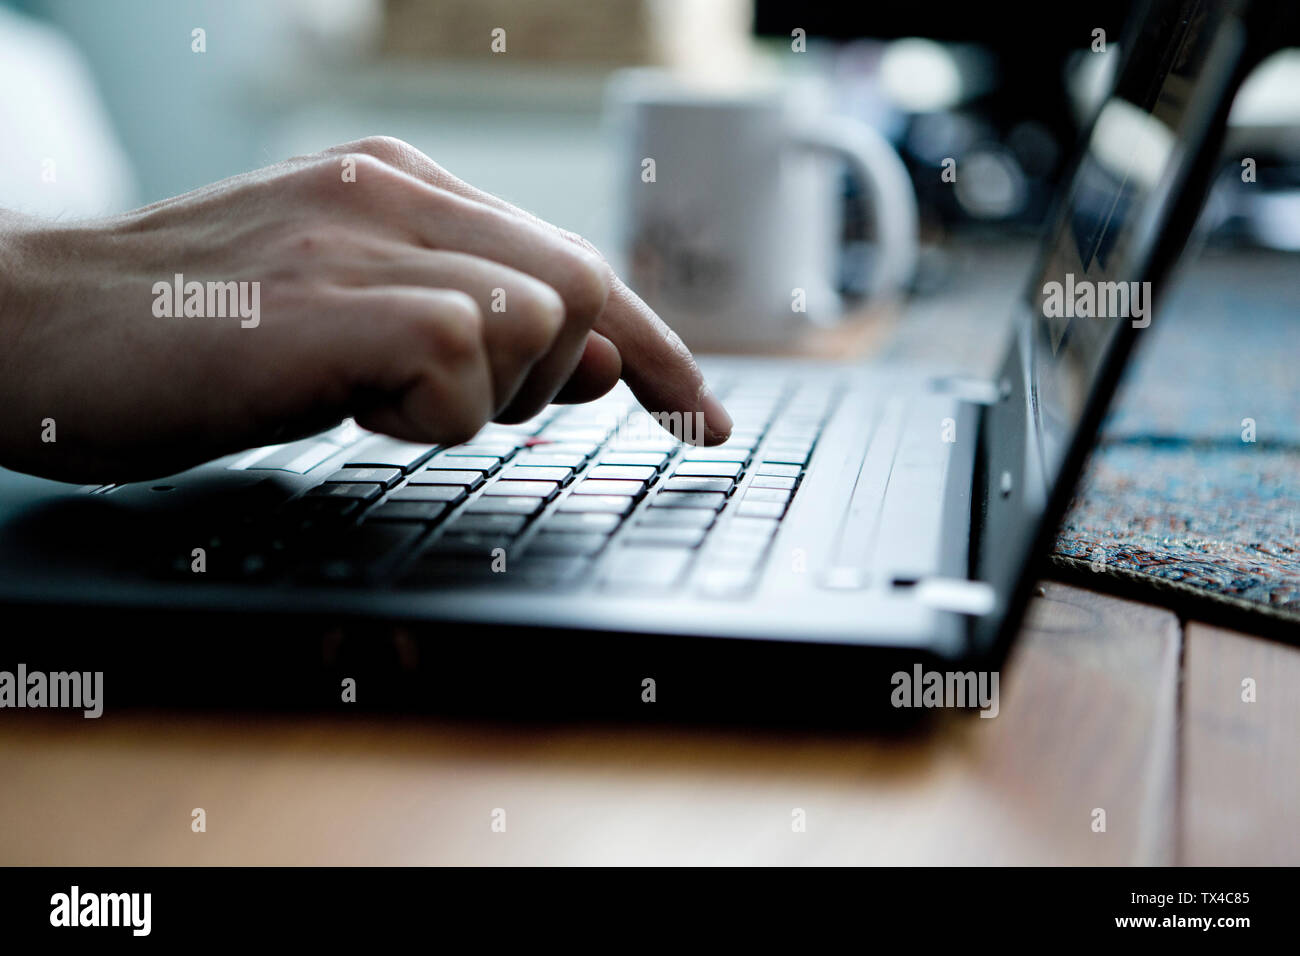 La digitazione a mano con un dito di una mano su un computer portatile Foto Stock